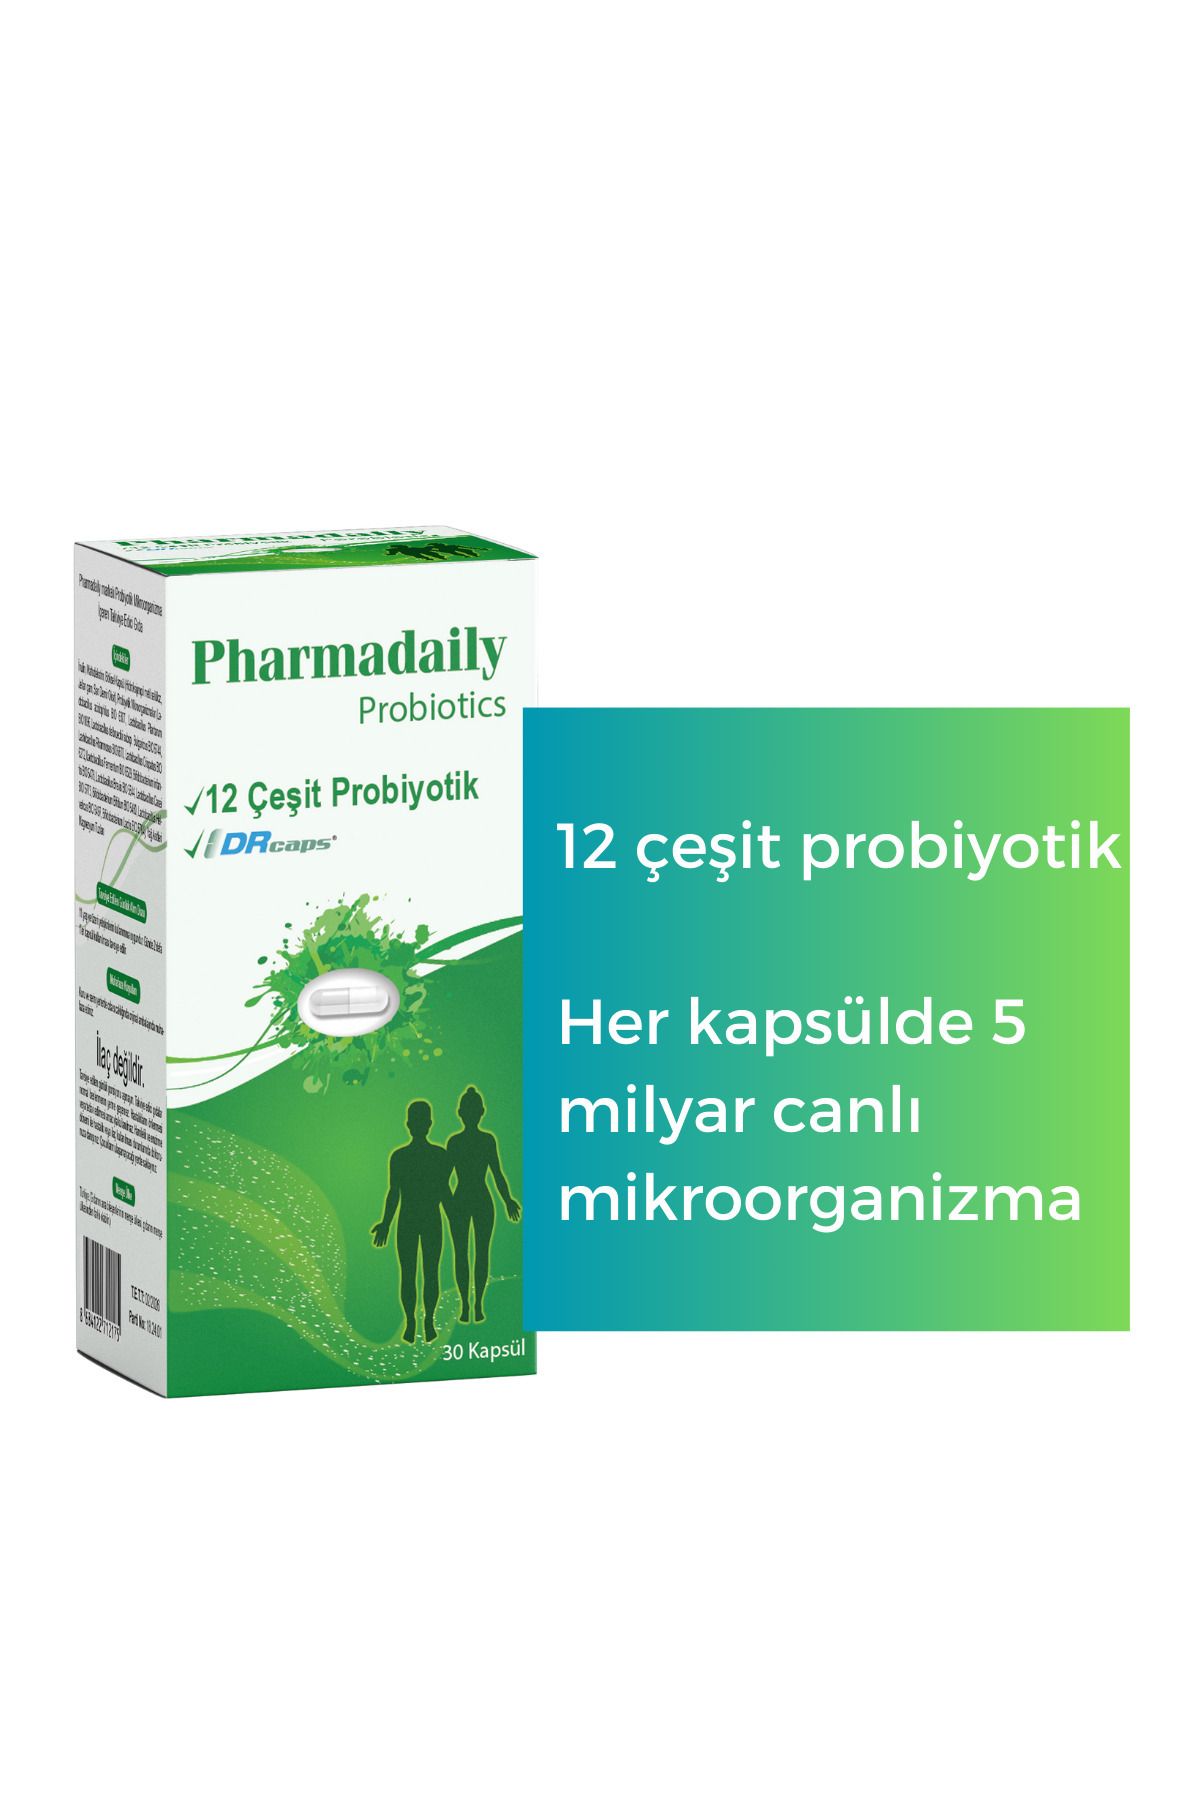 Pharmadaily Probiotics Probiotic Complex (12 Çeşit Probiyotik)